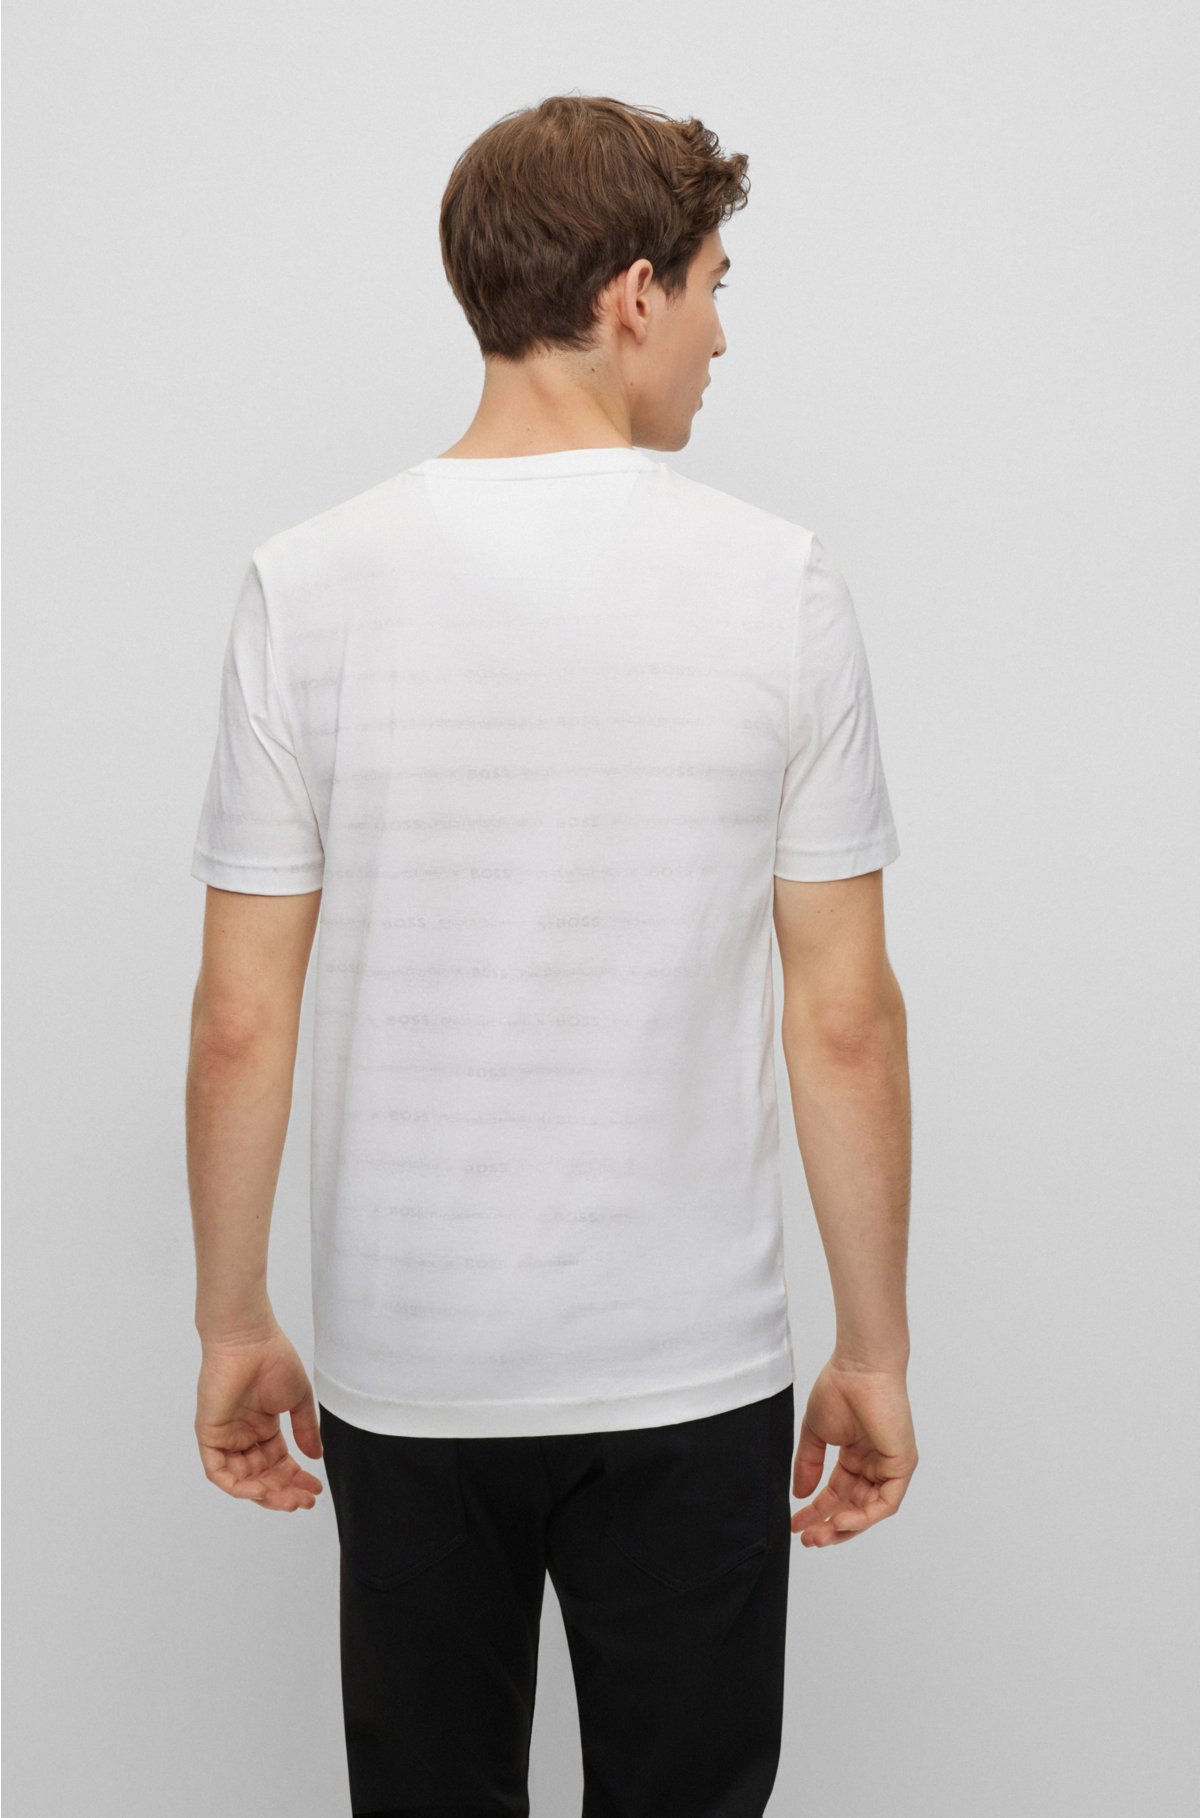 BOSS - Porsche x BOSS slim-fit T-shirt with exclusive branding